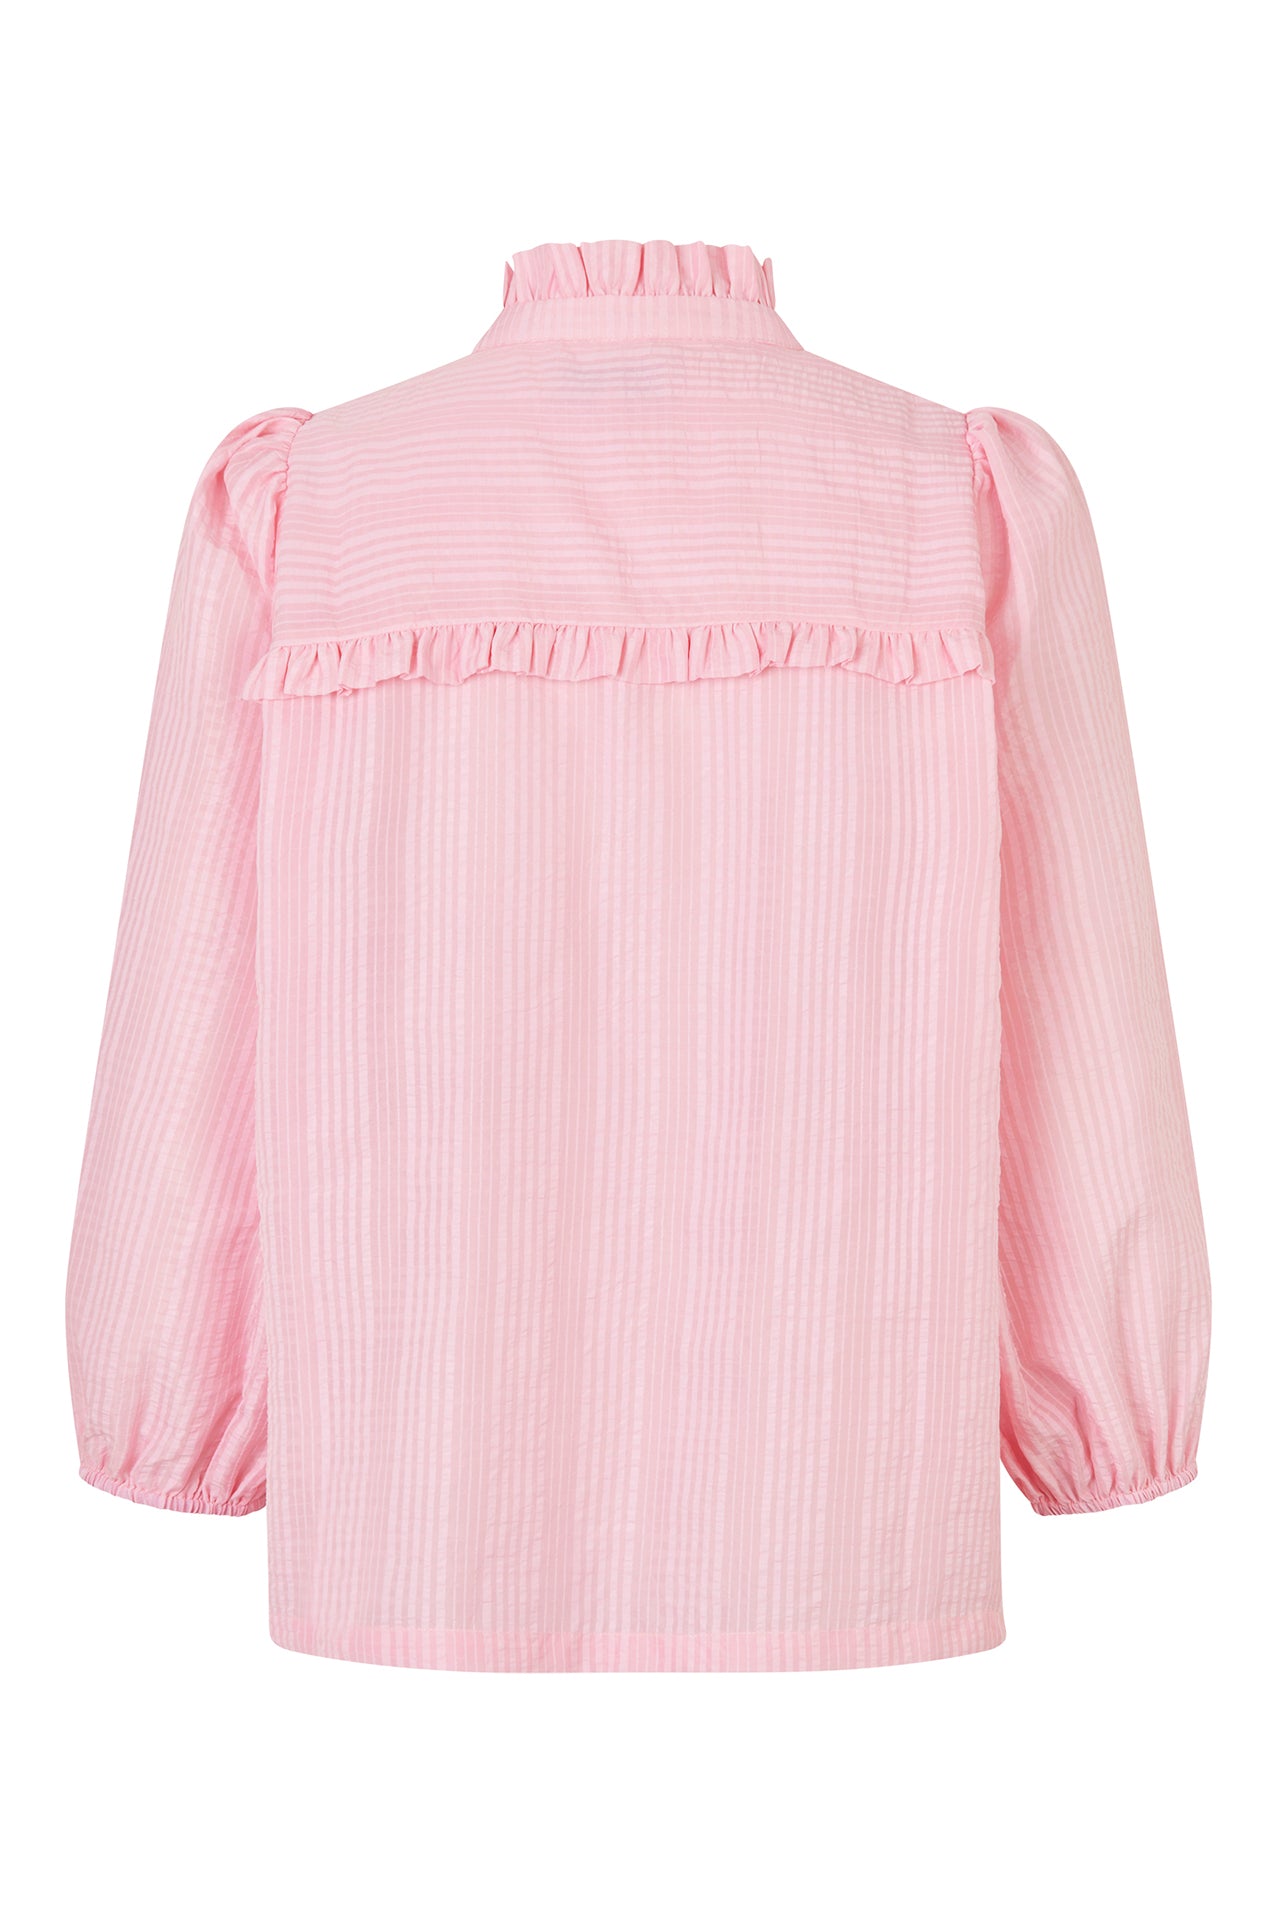 Lollys Laundry PerthLL Shirt 3/4 Shirt 51 Pink